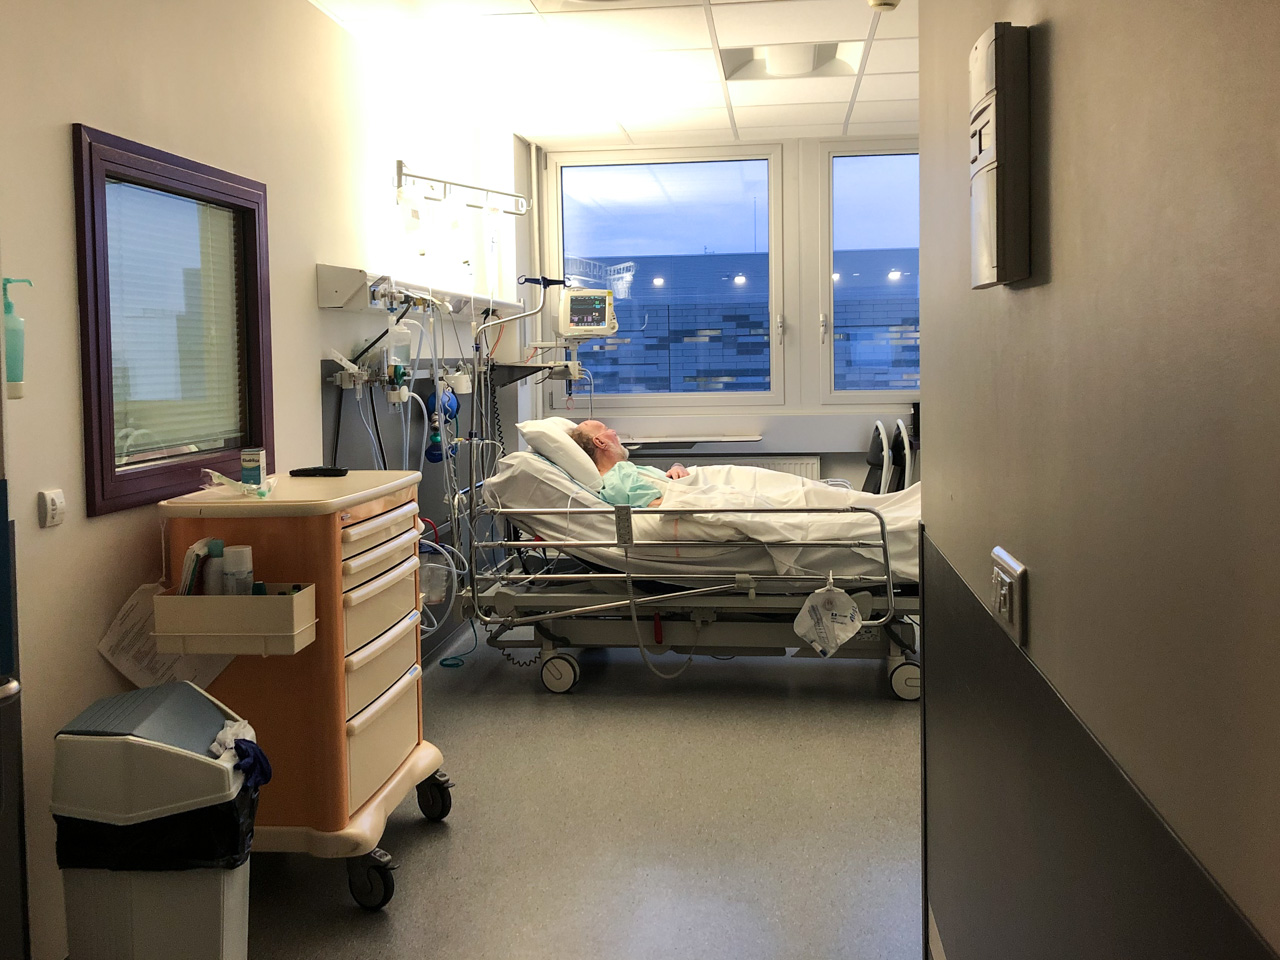 Dans l’unité, les patients ont des chambres individuelles pour pouvoir circuler avec le matériel médical nécessaire.